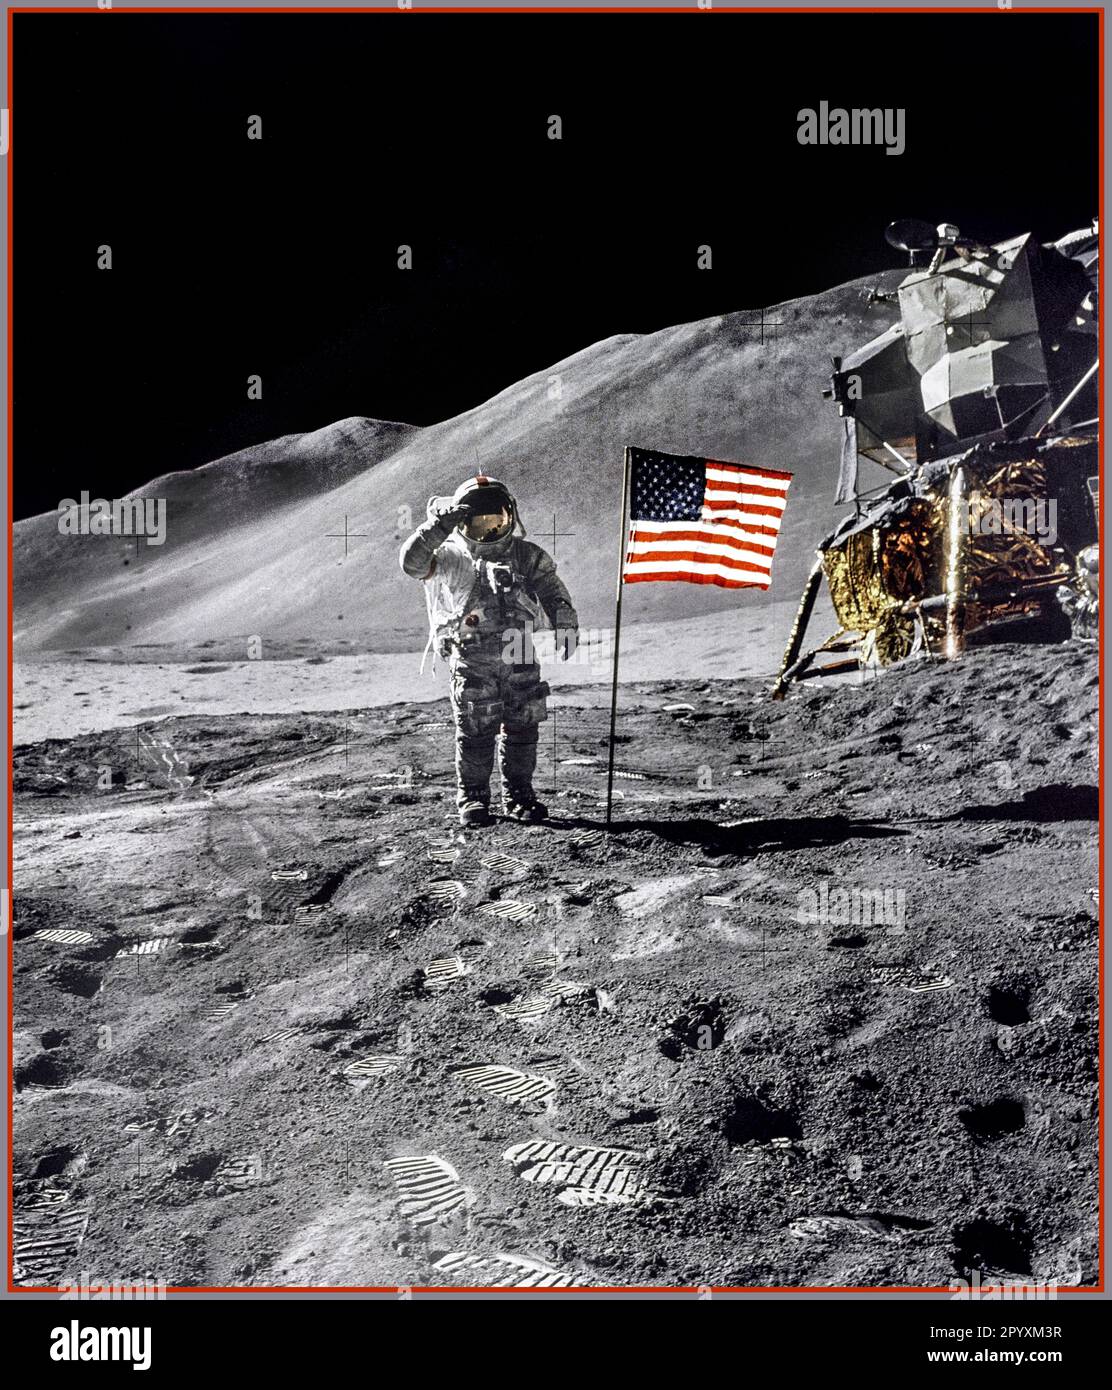 AUF DEM MOND hält Astronaut David R. Scott, Kommandant, einen militärischen Gruß, während er neben der US-Flagge steht, während der Apollo 15-Mondoberflächenaktivität (EVA) am Landeplatz von Hadley-Apennin. Die Flagge wurde gegen Ende von EVA-2 ausgelöst. Das Lunar Module „Falcon“ ist teilweise auf der rechten Seite sichtbar. Das Hadley Delta im Hintergrund erhebt sich etwa 4.000 Meter (etwa 13.124 Fuß) über der Ebene. Der Fuß des Berges ist etwa 5 Kilometer entfernt. Dieses Foto wurde von Astronaut James B. Irwin, Pilot des Lunar Module, aufgenommen. Stockfoto